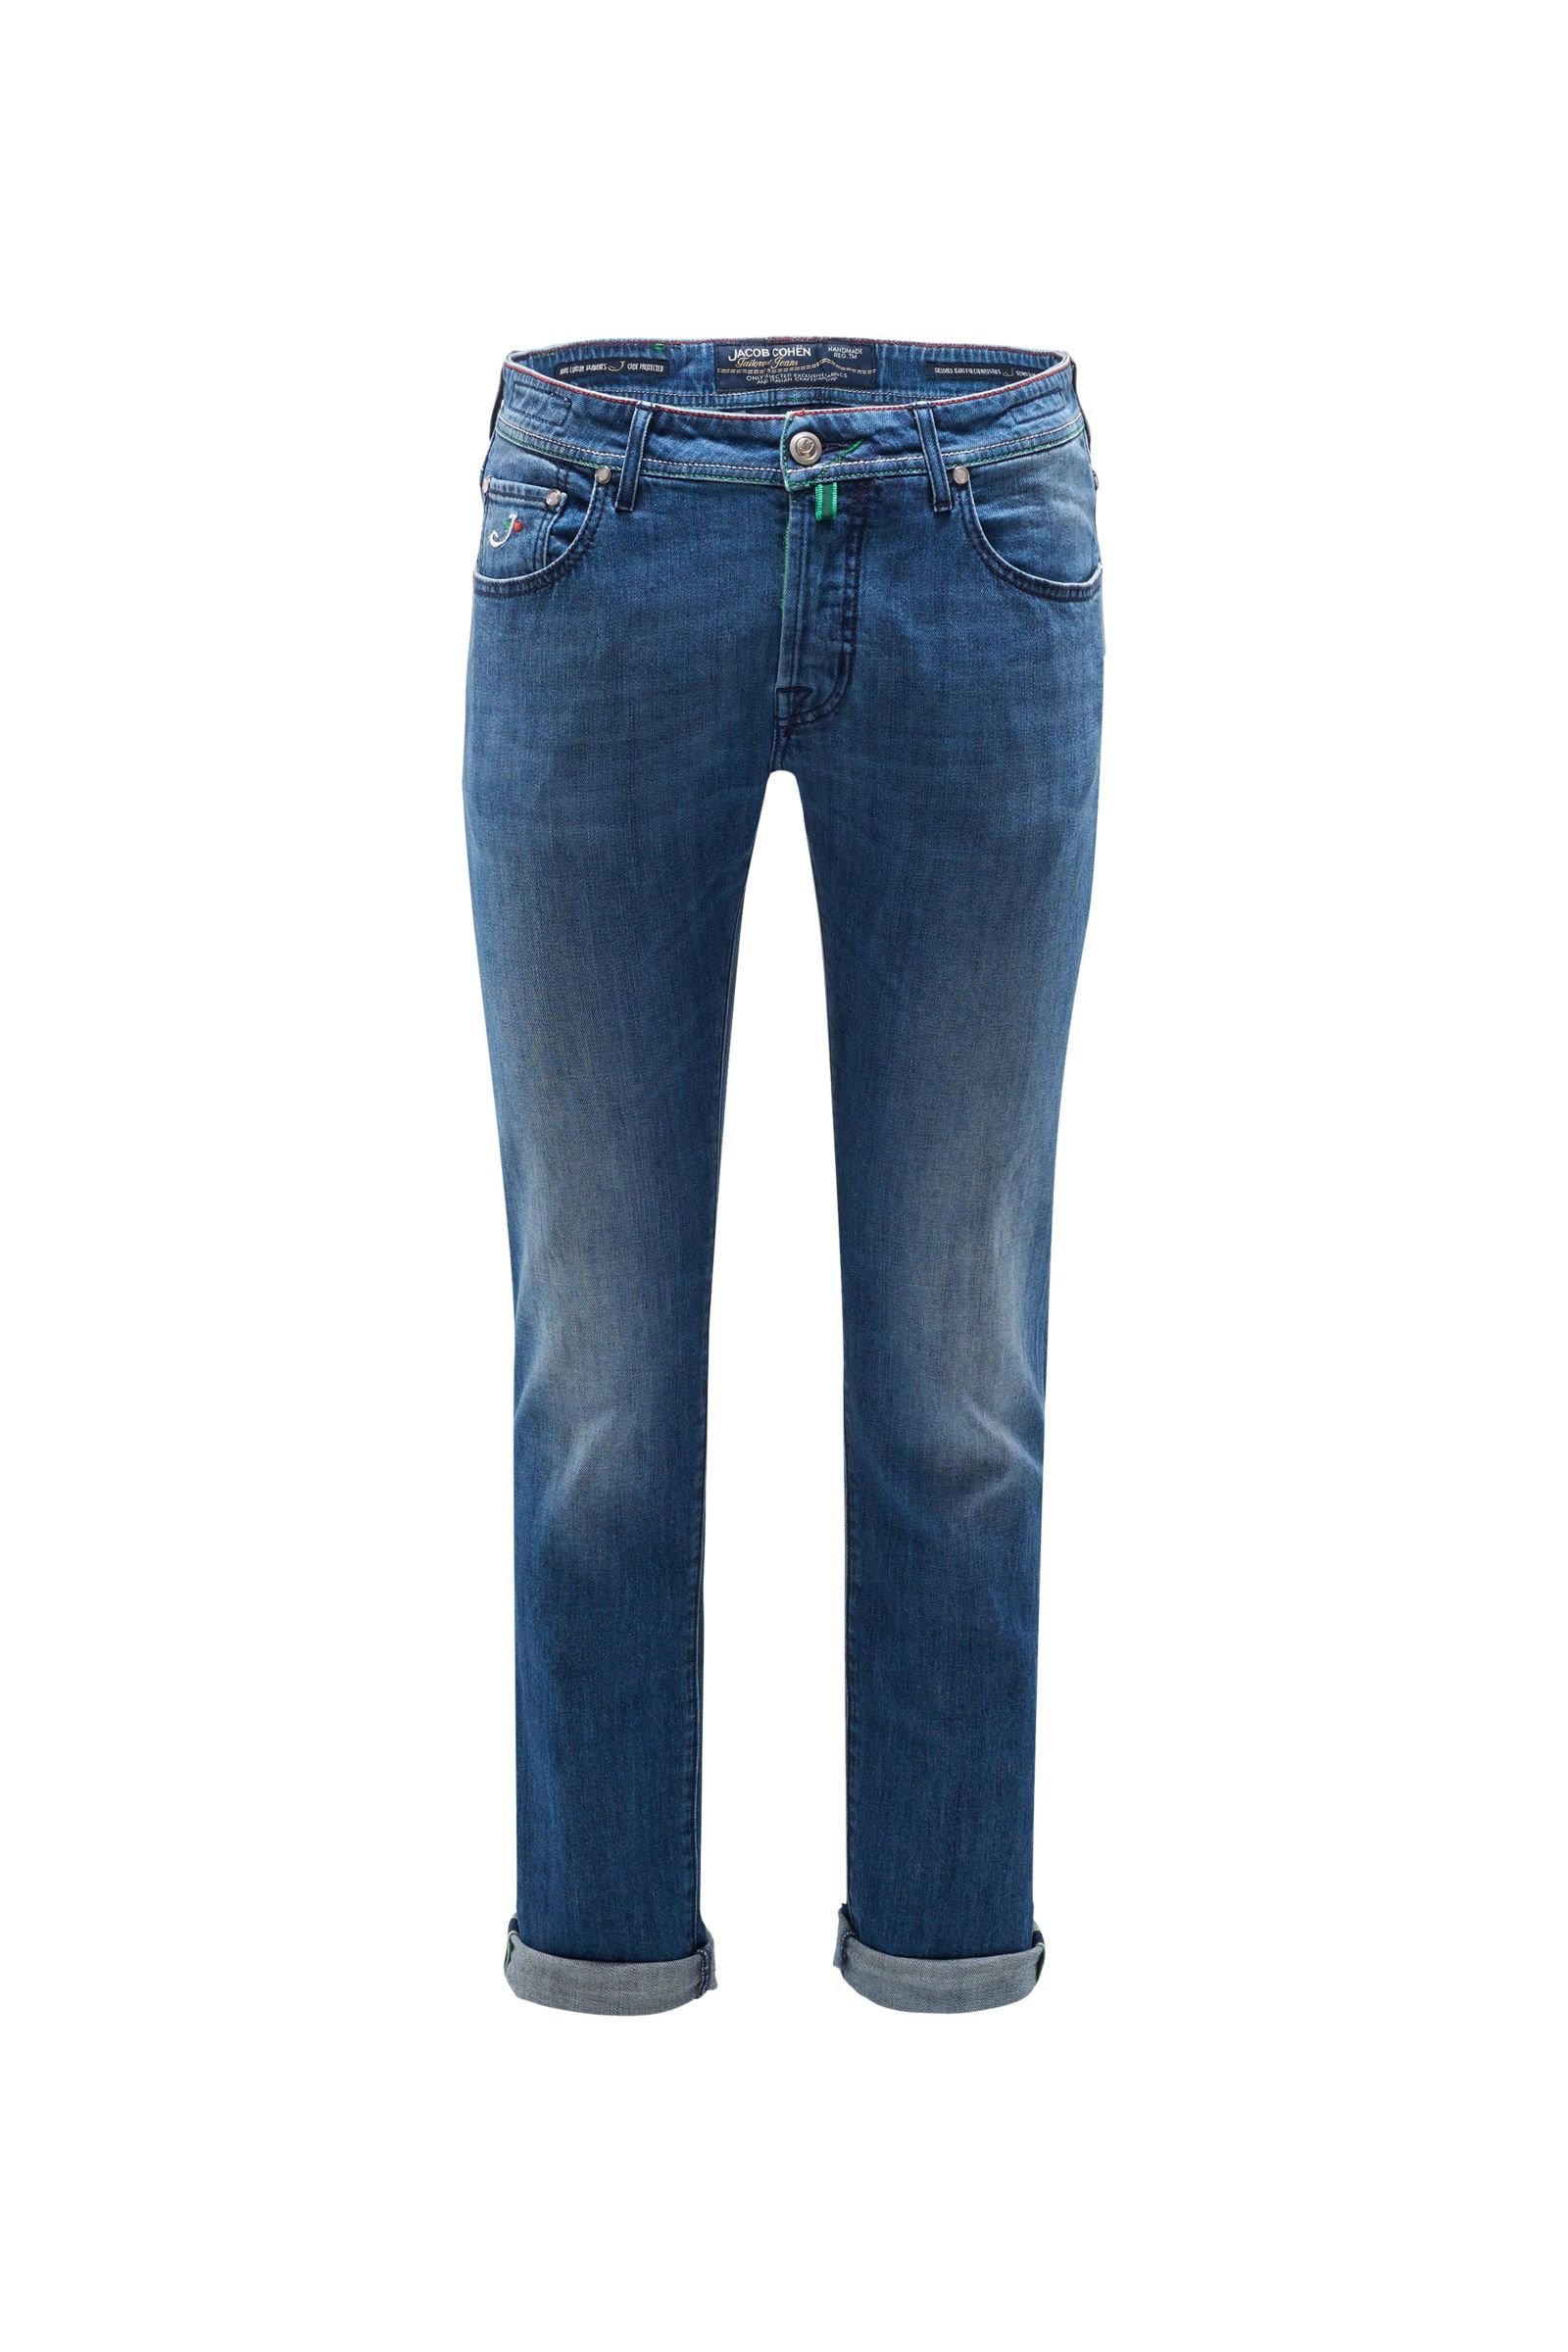 Jeans 'J688 Limited Comfort Slim Fit' grey-blue